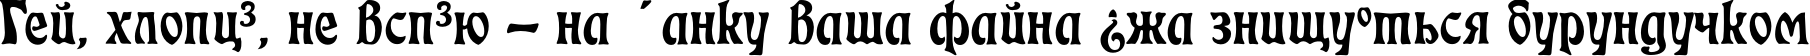 Пример написания шрифтом EckmAnn TYGRA текста на украинском